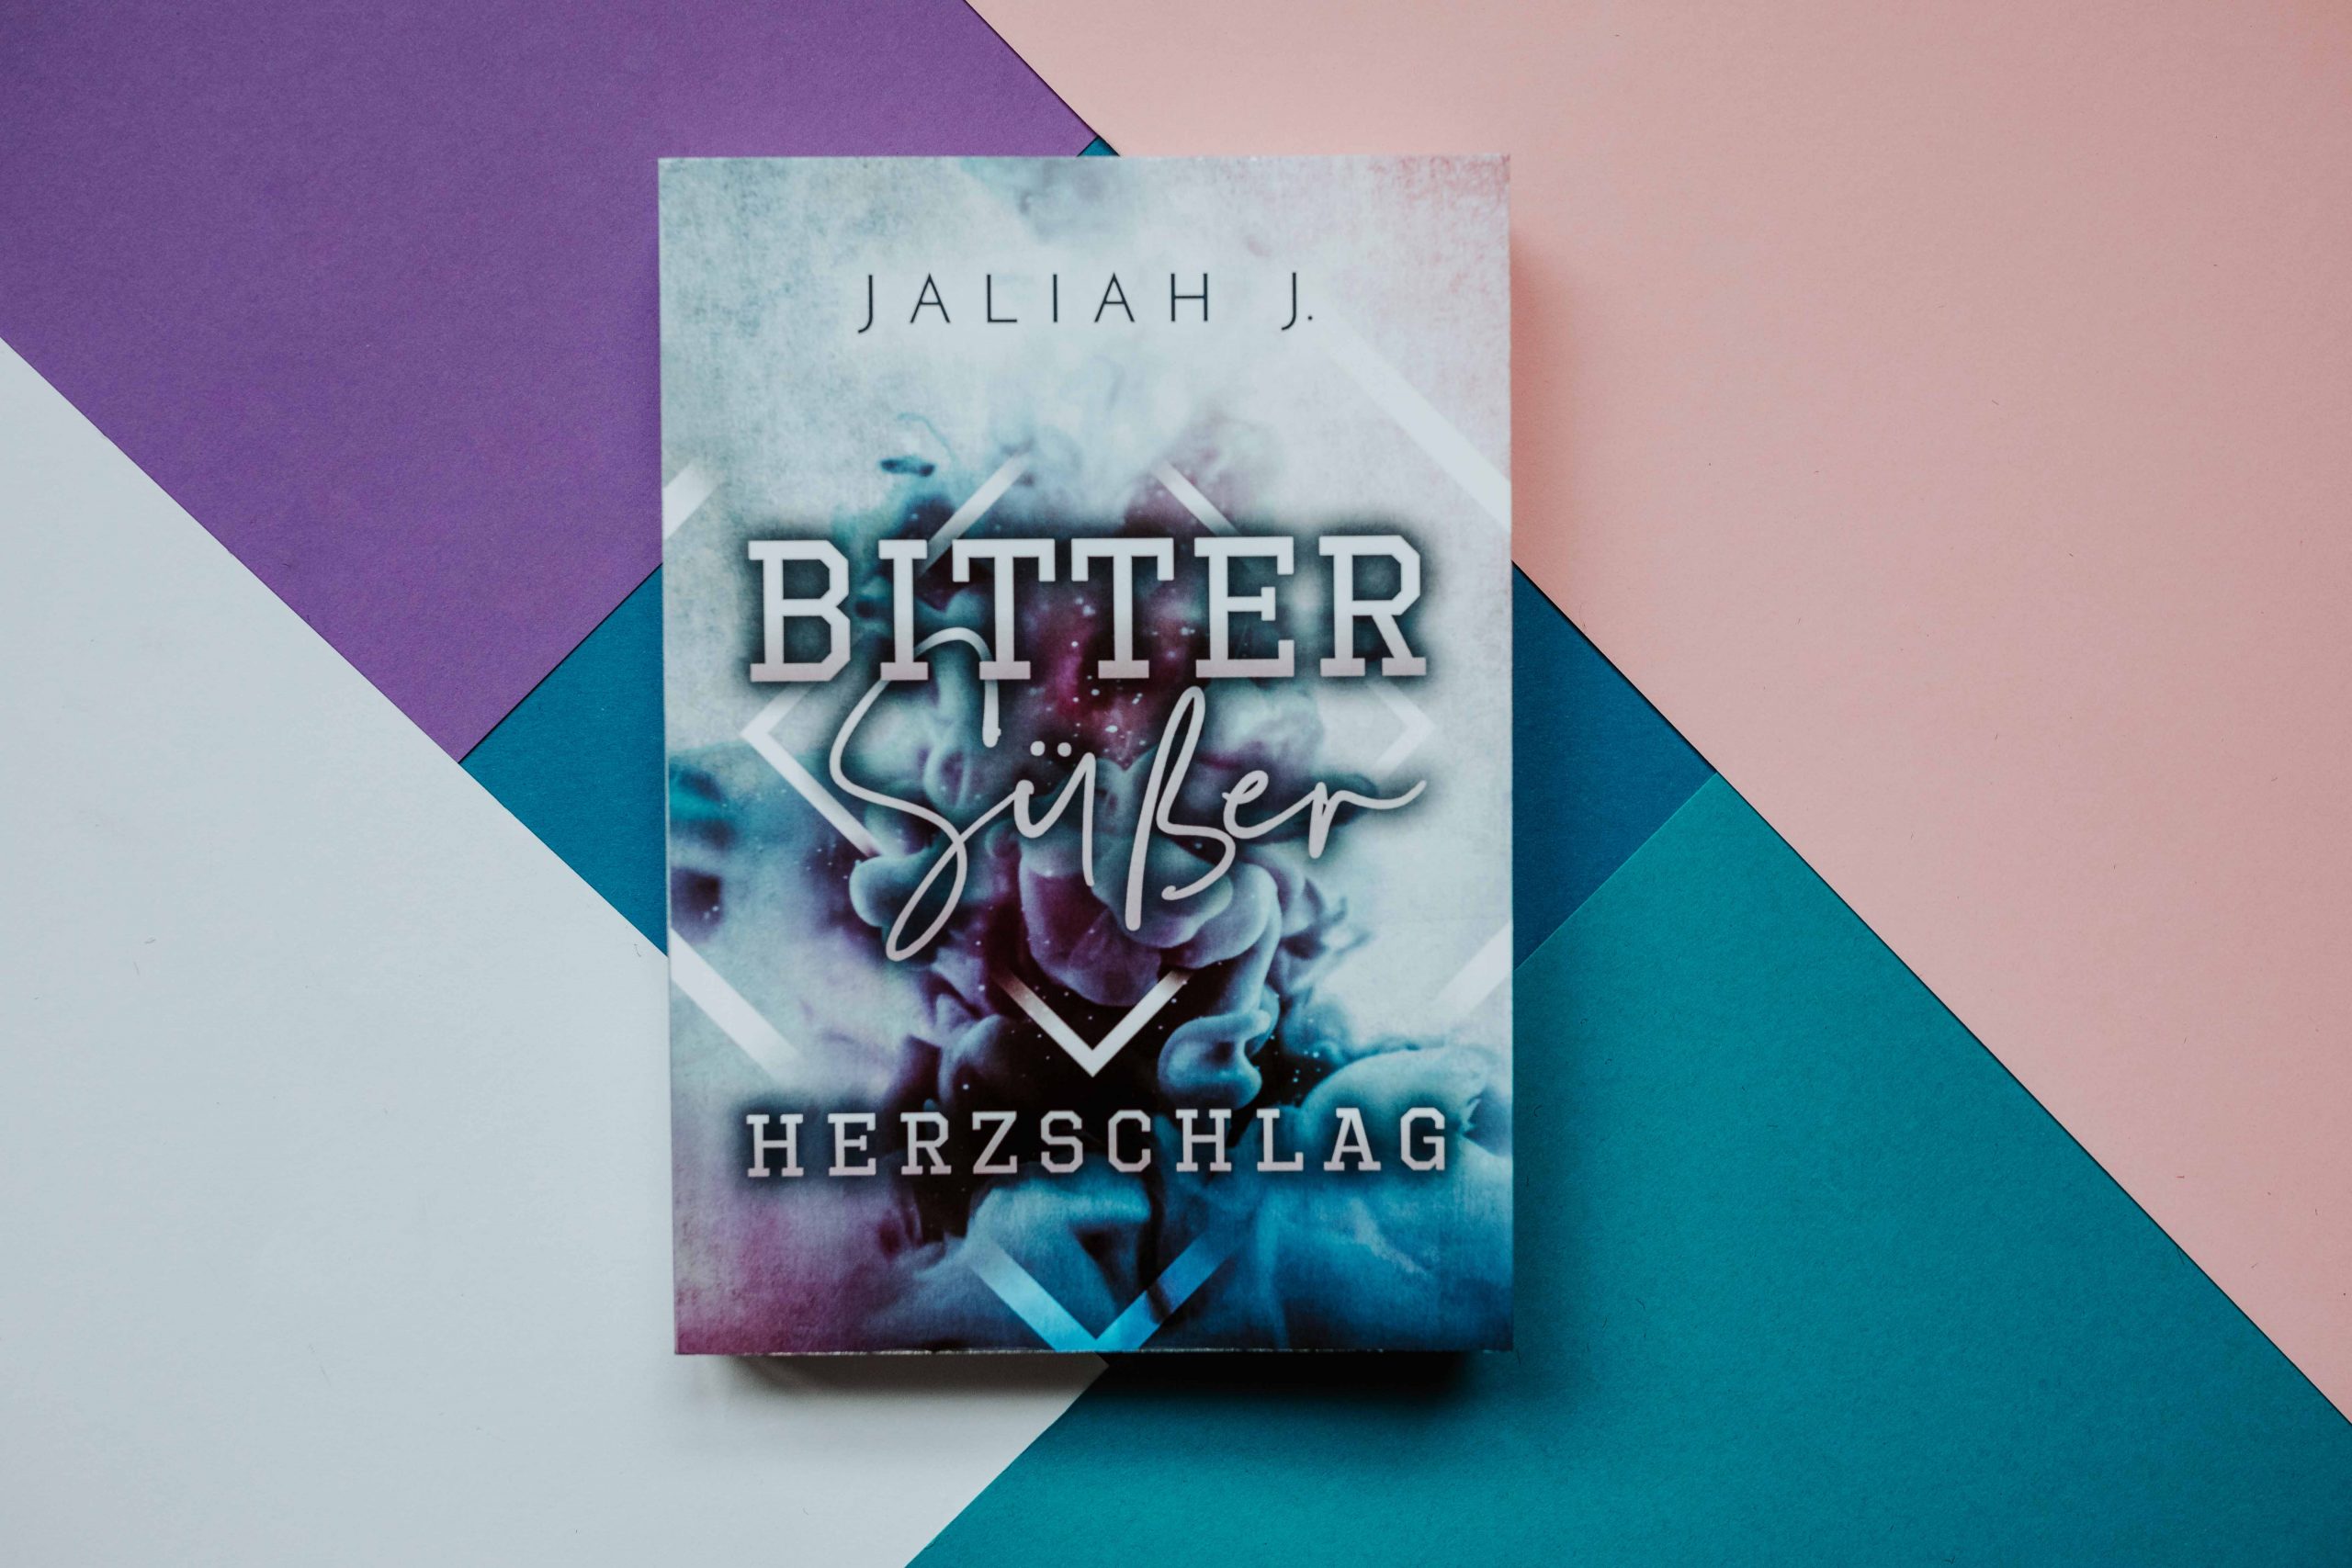 Das Buch "Bittersüsser Herzschlag" von Jaliah J.